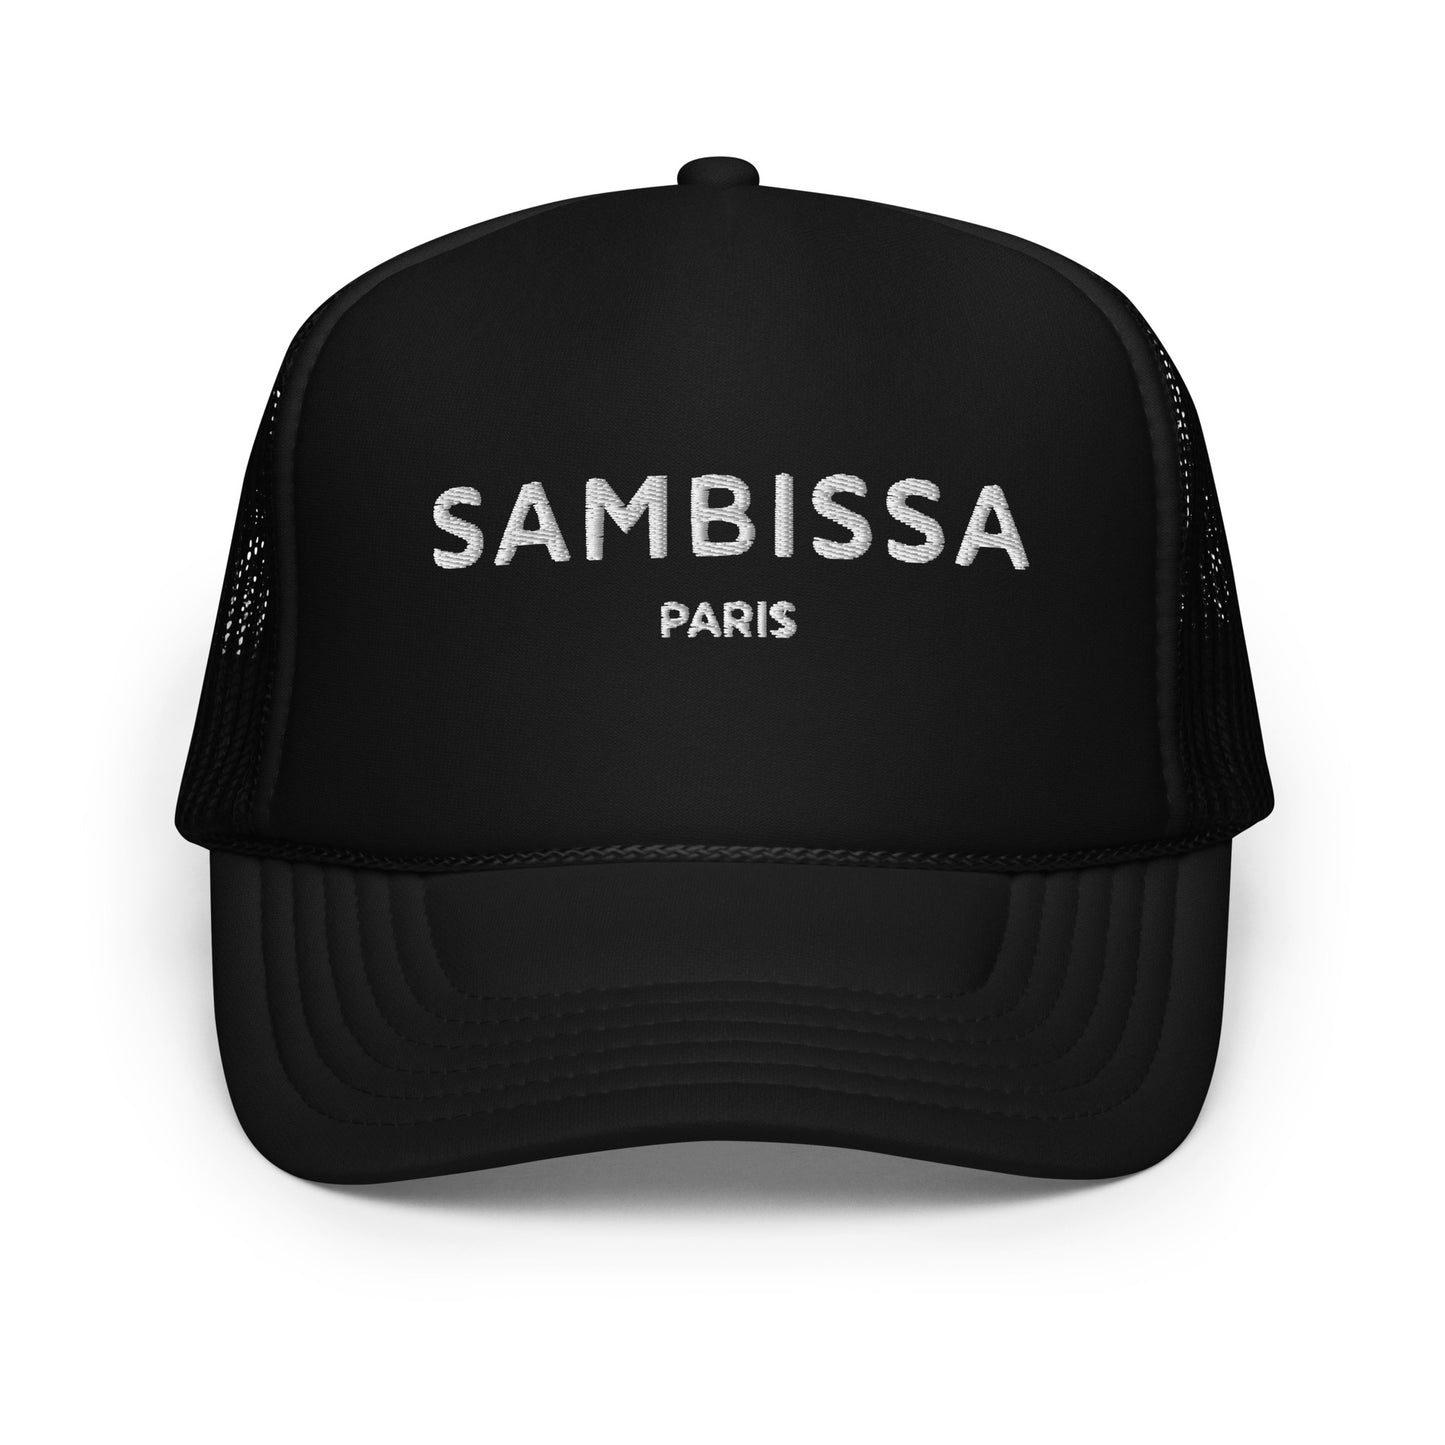 Sambissa trucker hat